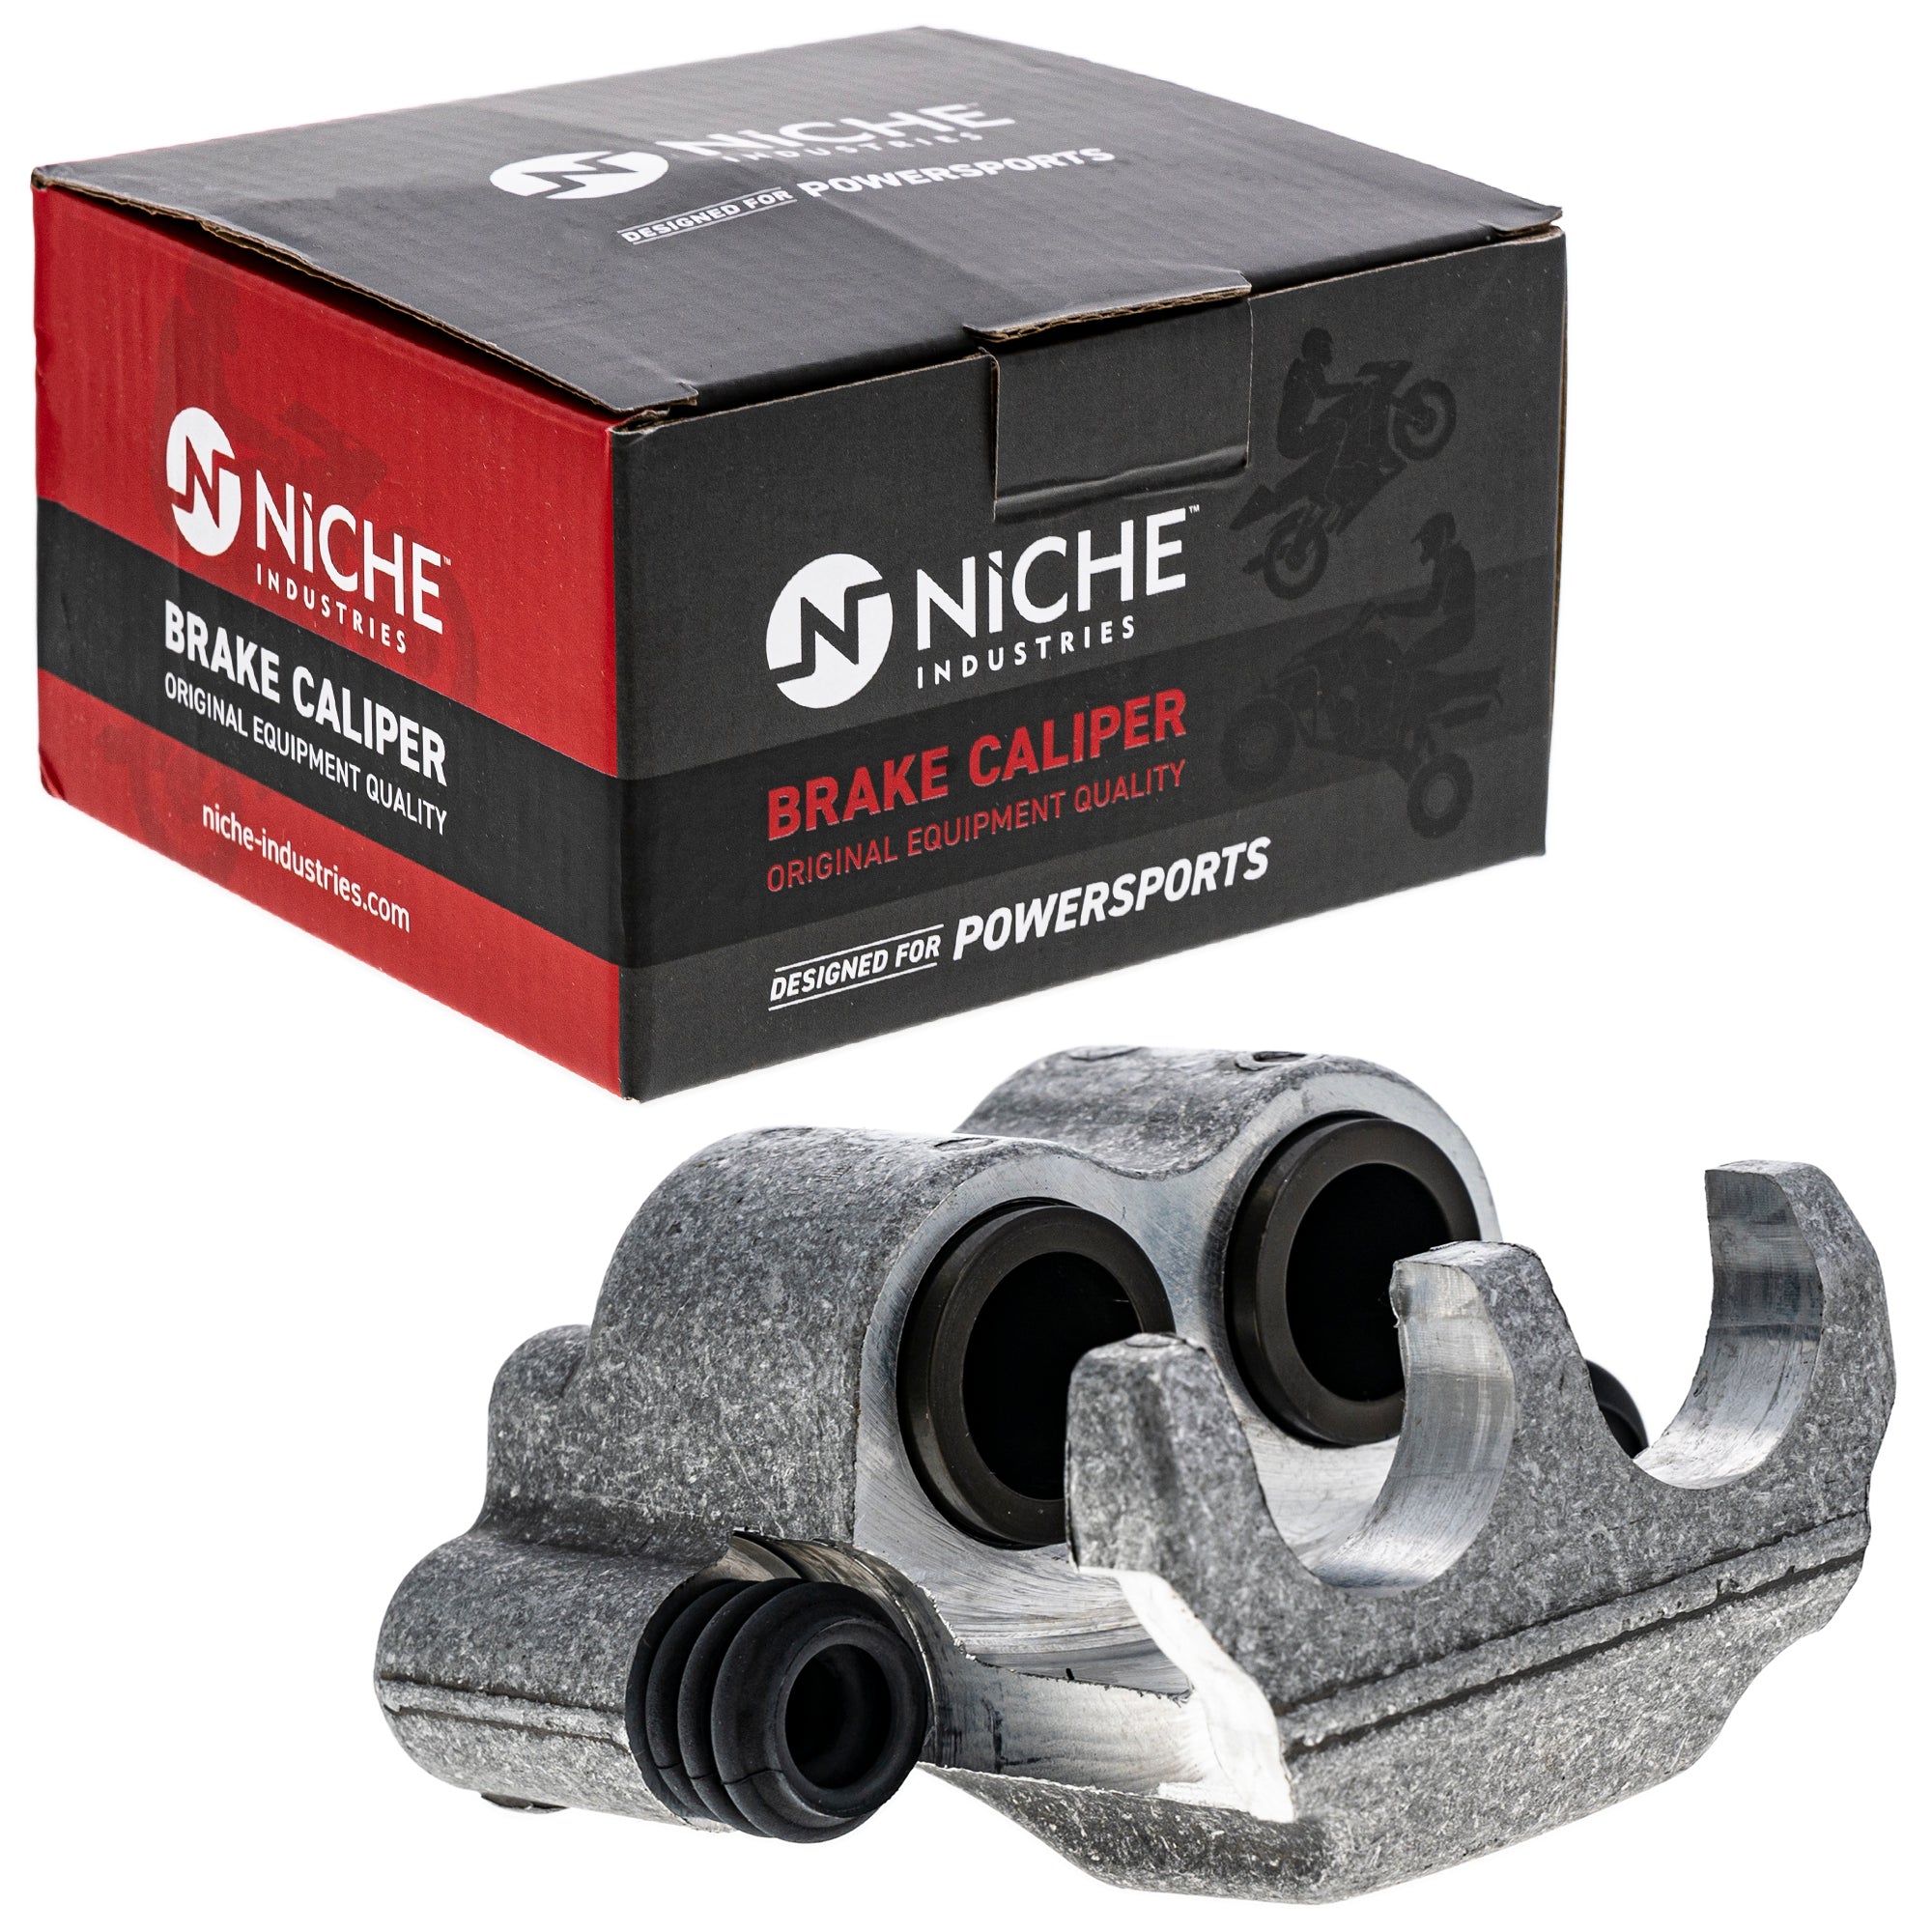 NICHE MK1001069 Brake Caliper Kit